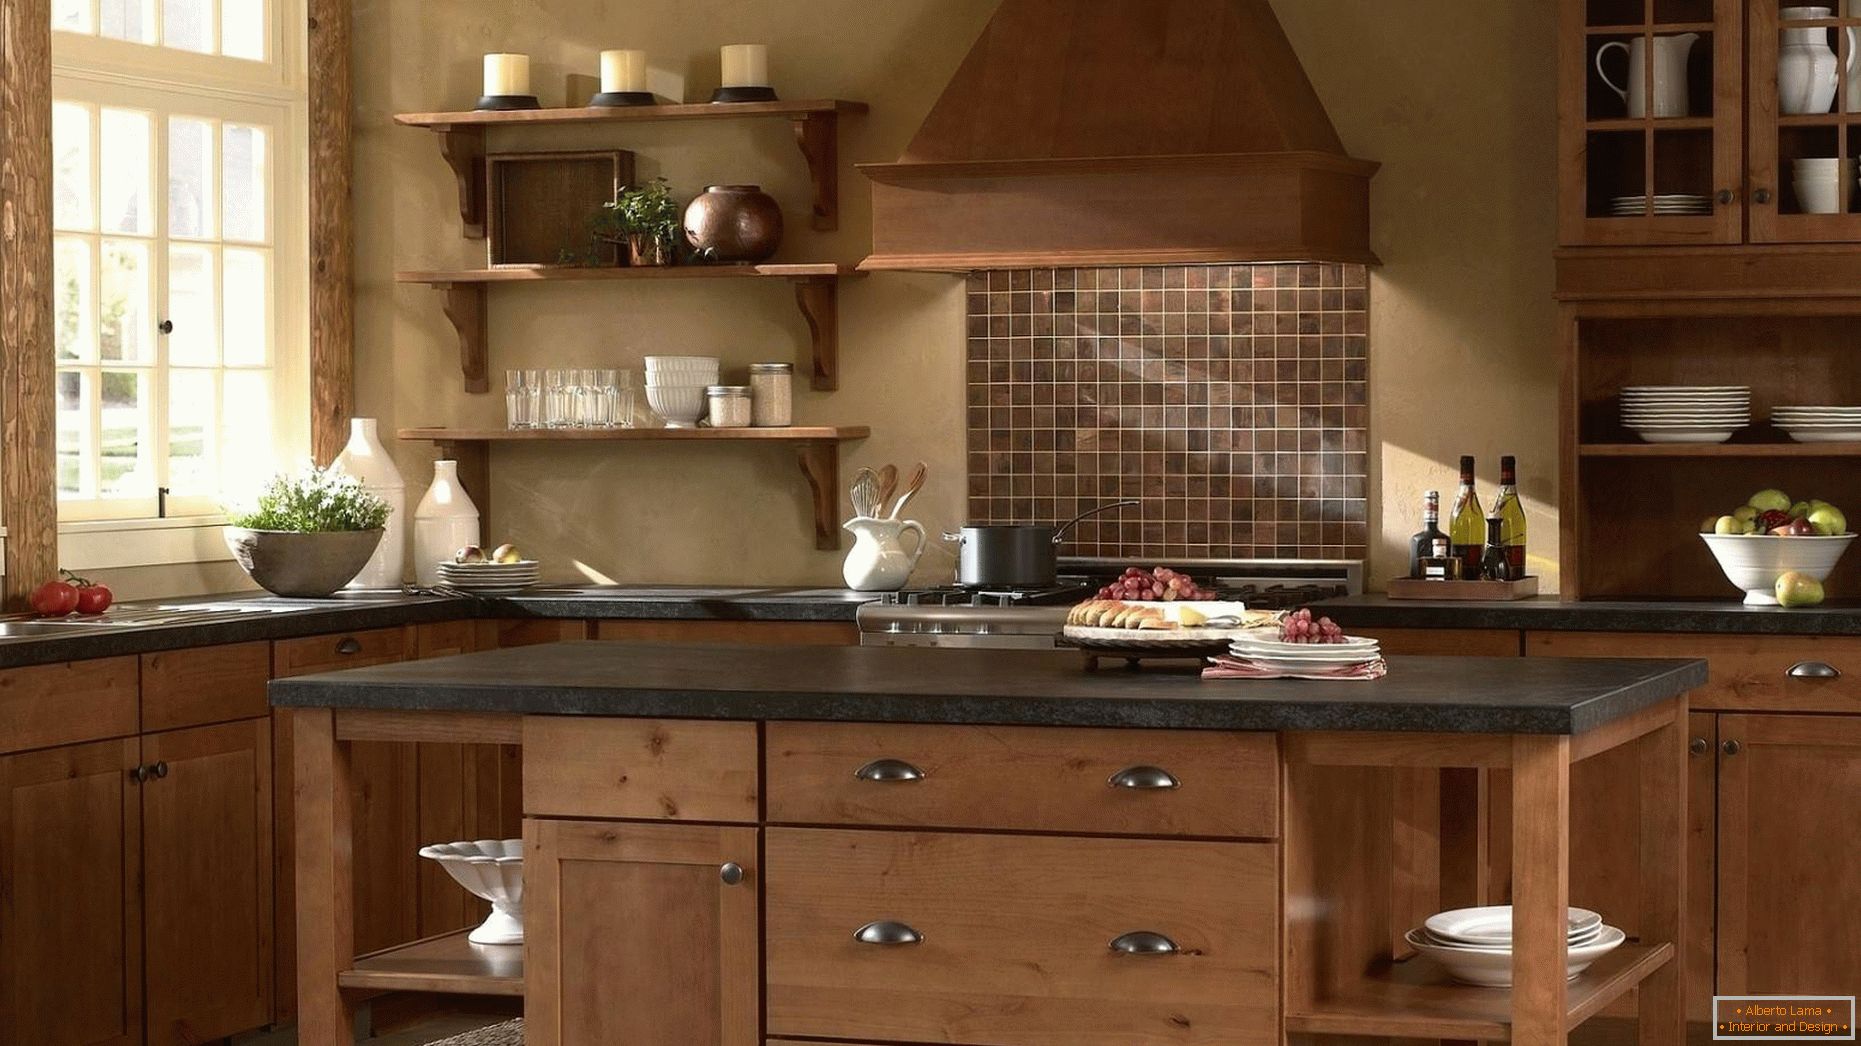 ¡Las cocinas hechas de madera son clásicas!